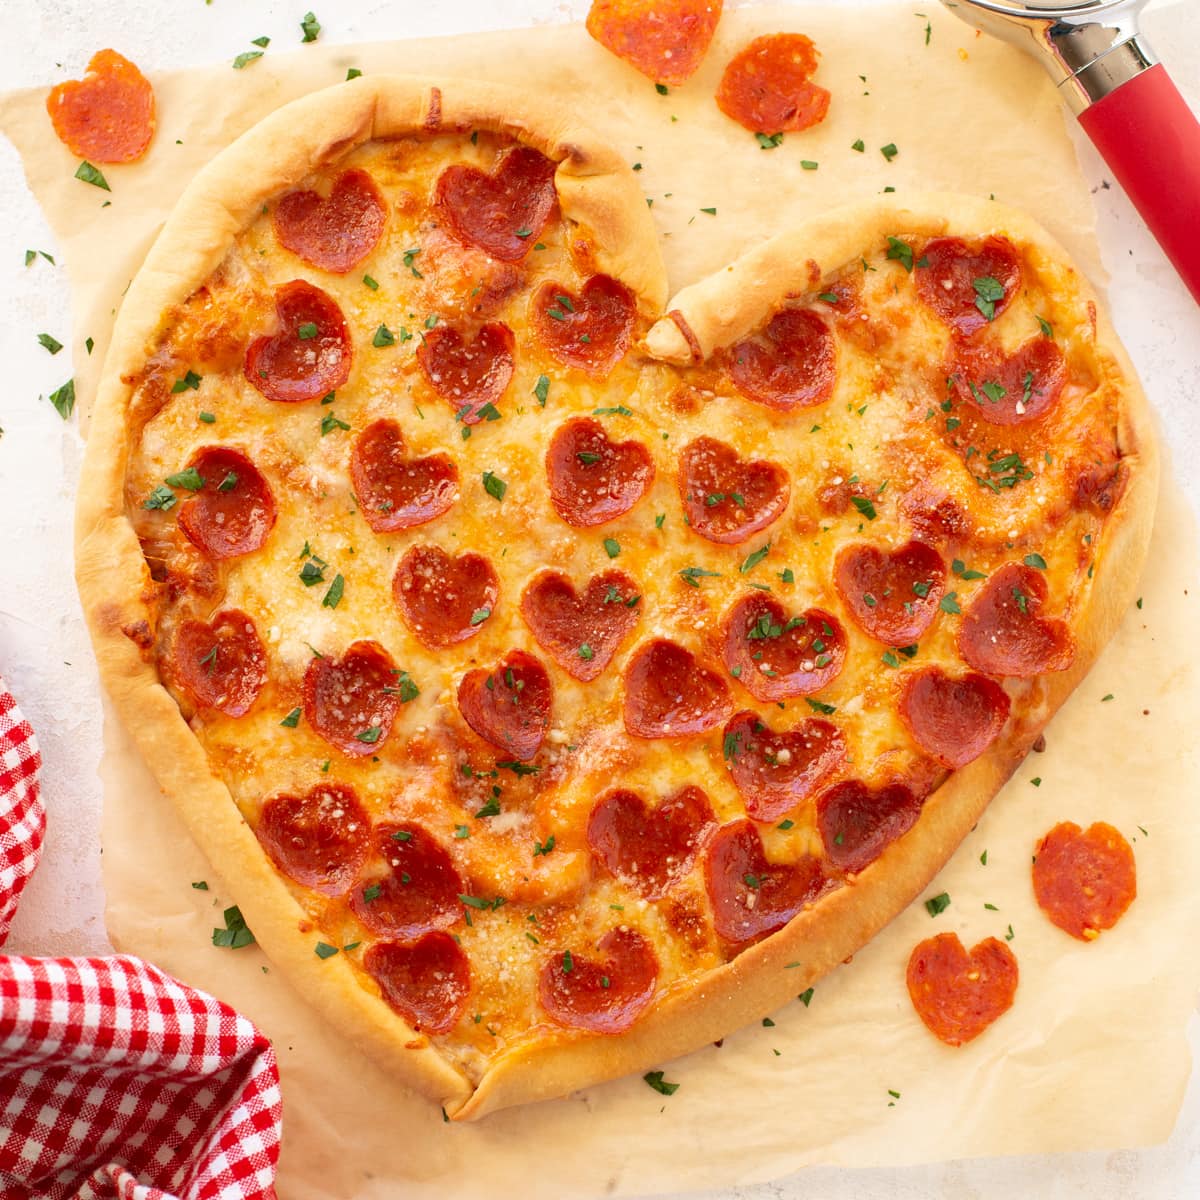 切菜板上展示的心形披萨。